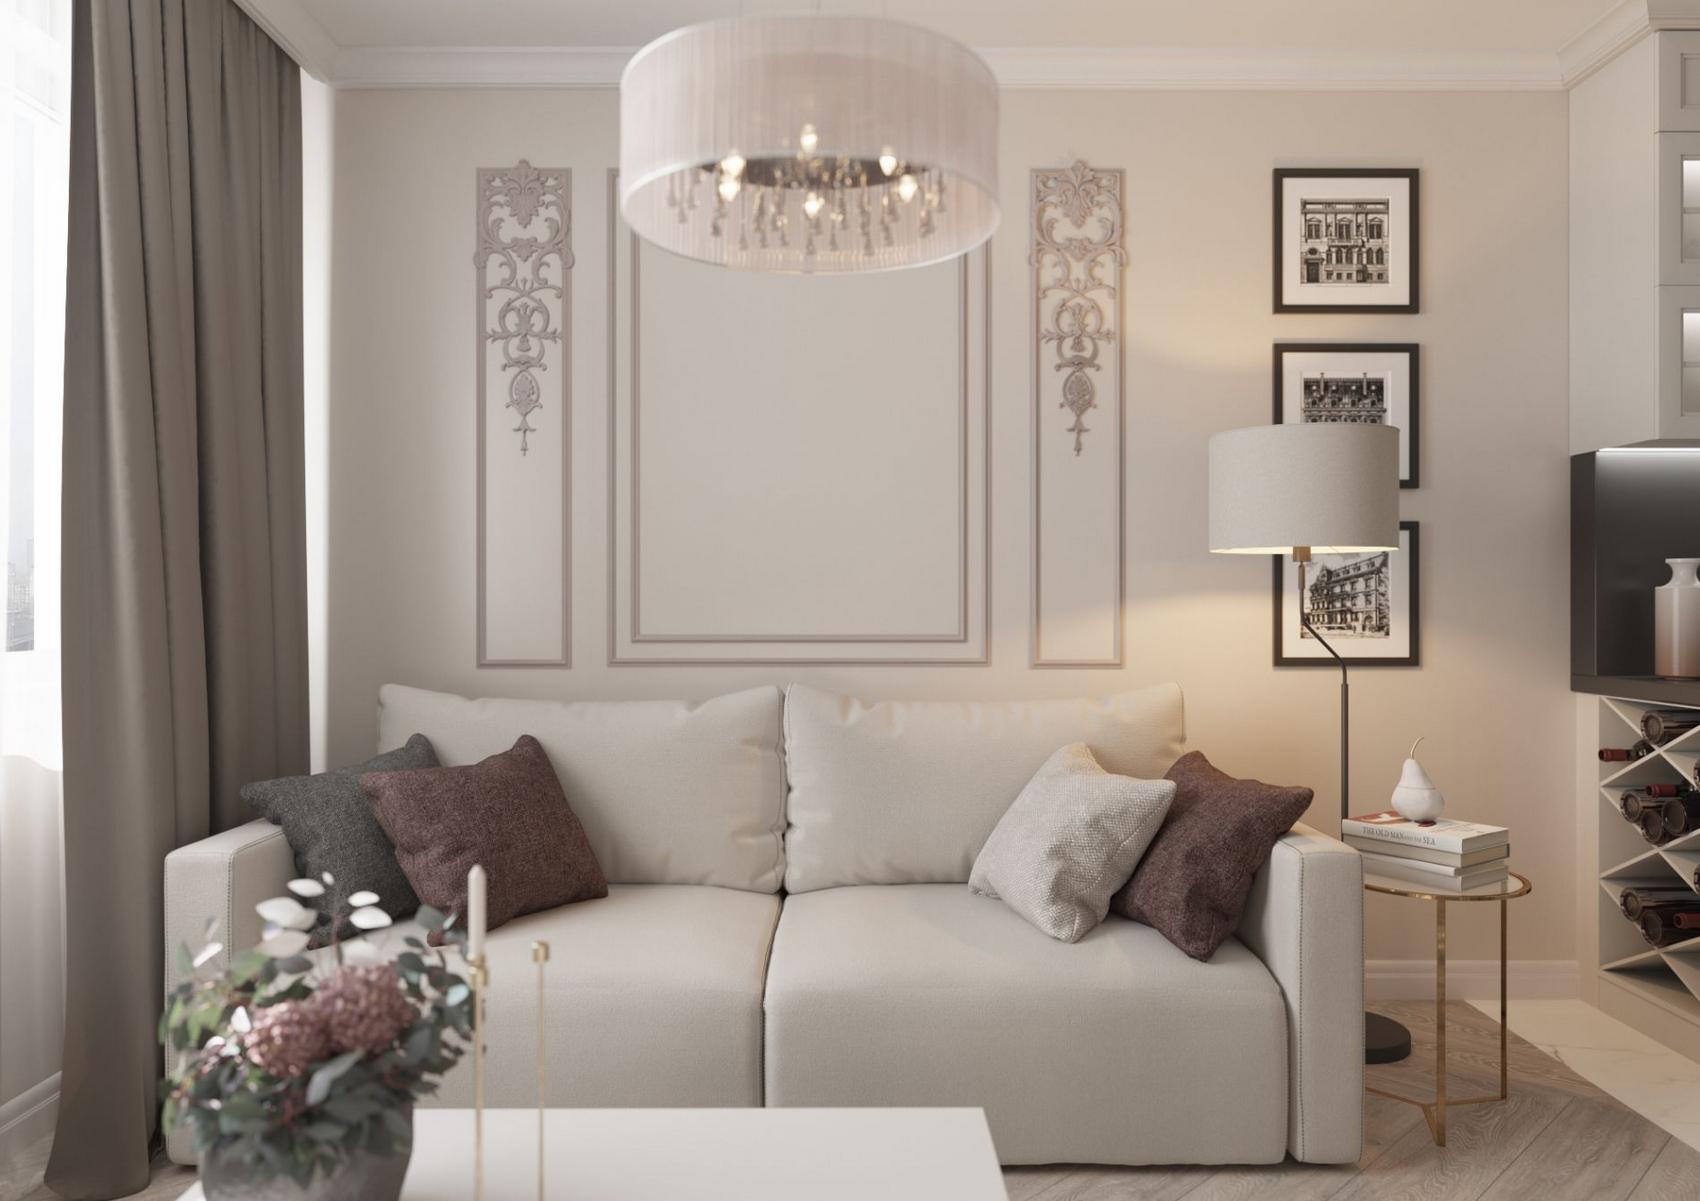 Trong phòng khách, màu tường be nhạt chủ đạo trở thành phông nền hoàn hảo để những món đồ nội thất trở nên quyến rũ như ghế sofa, gối tựa, đèn chùm lộng lẫy.